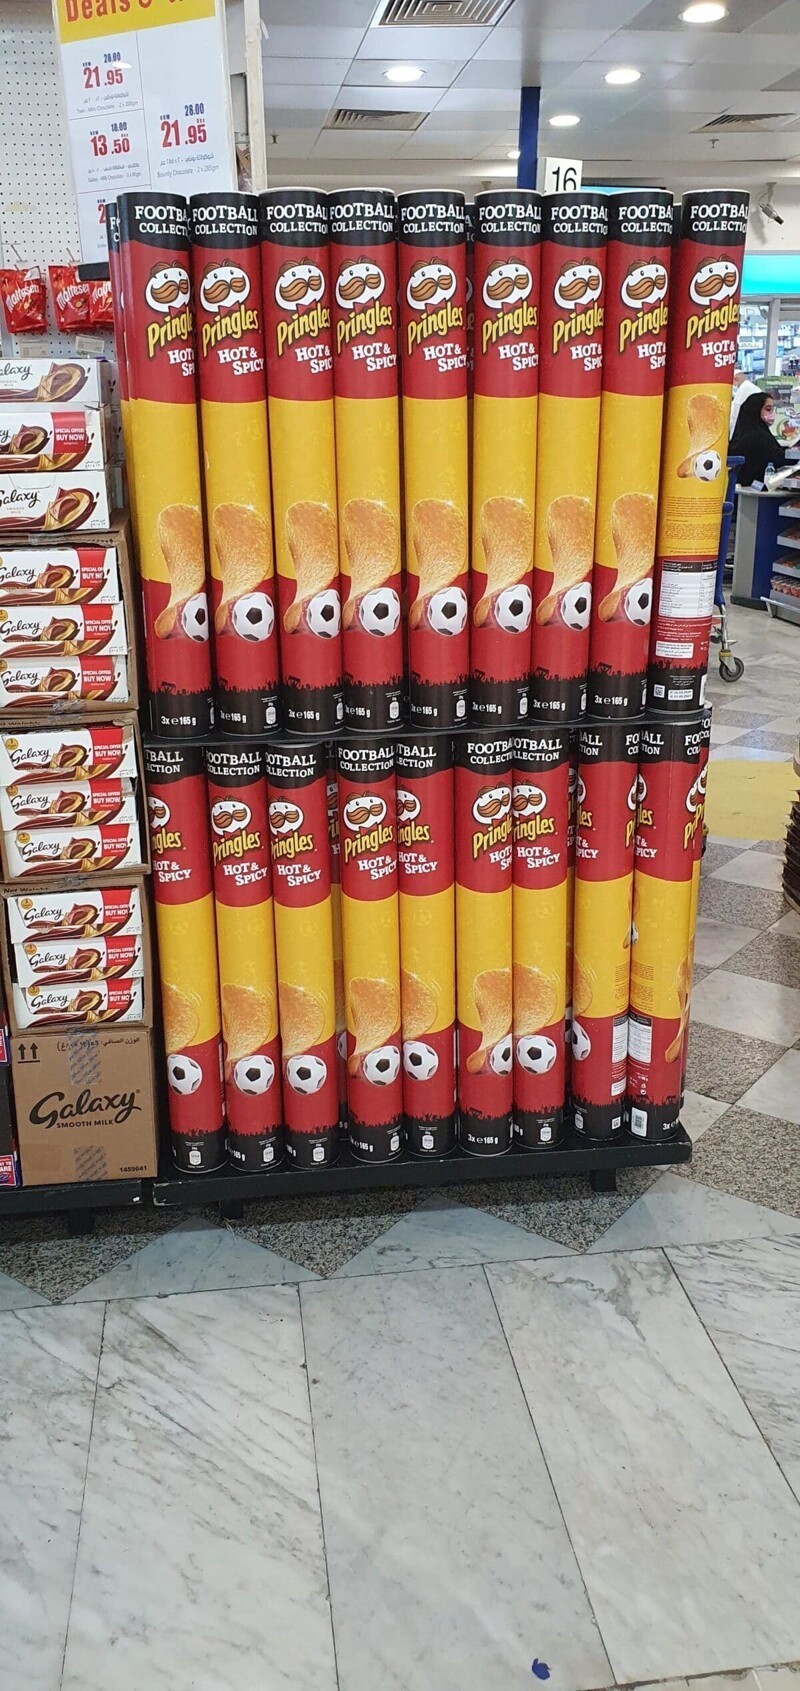 4. Упаковка Pringles длиною в метр